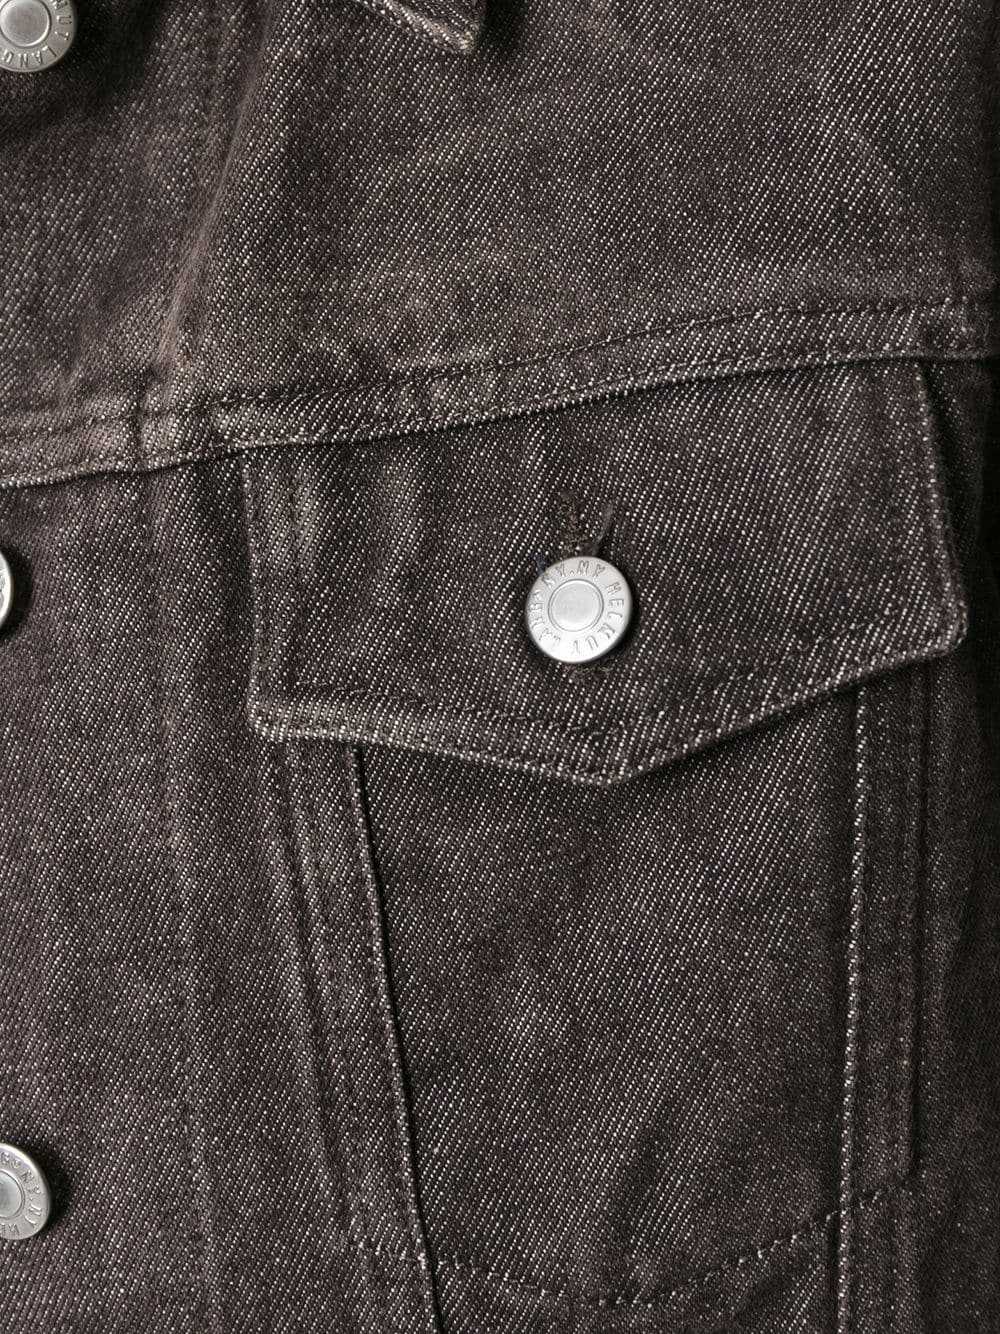 Helmut Lang Pre-Owned 1990s raw denim jacket - Gr… - image 2